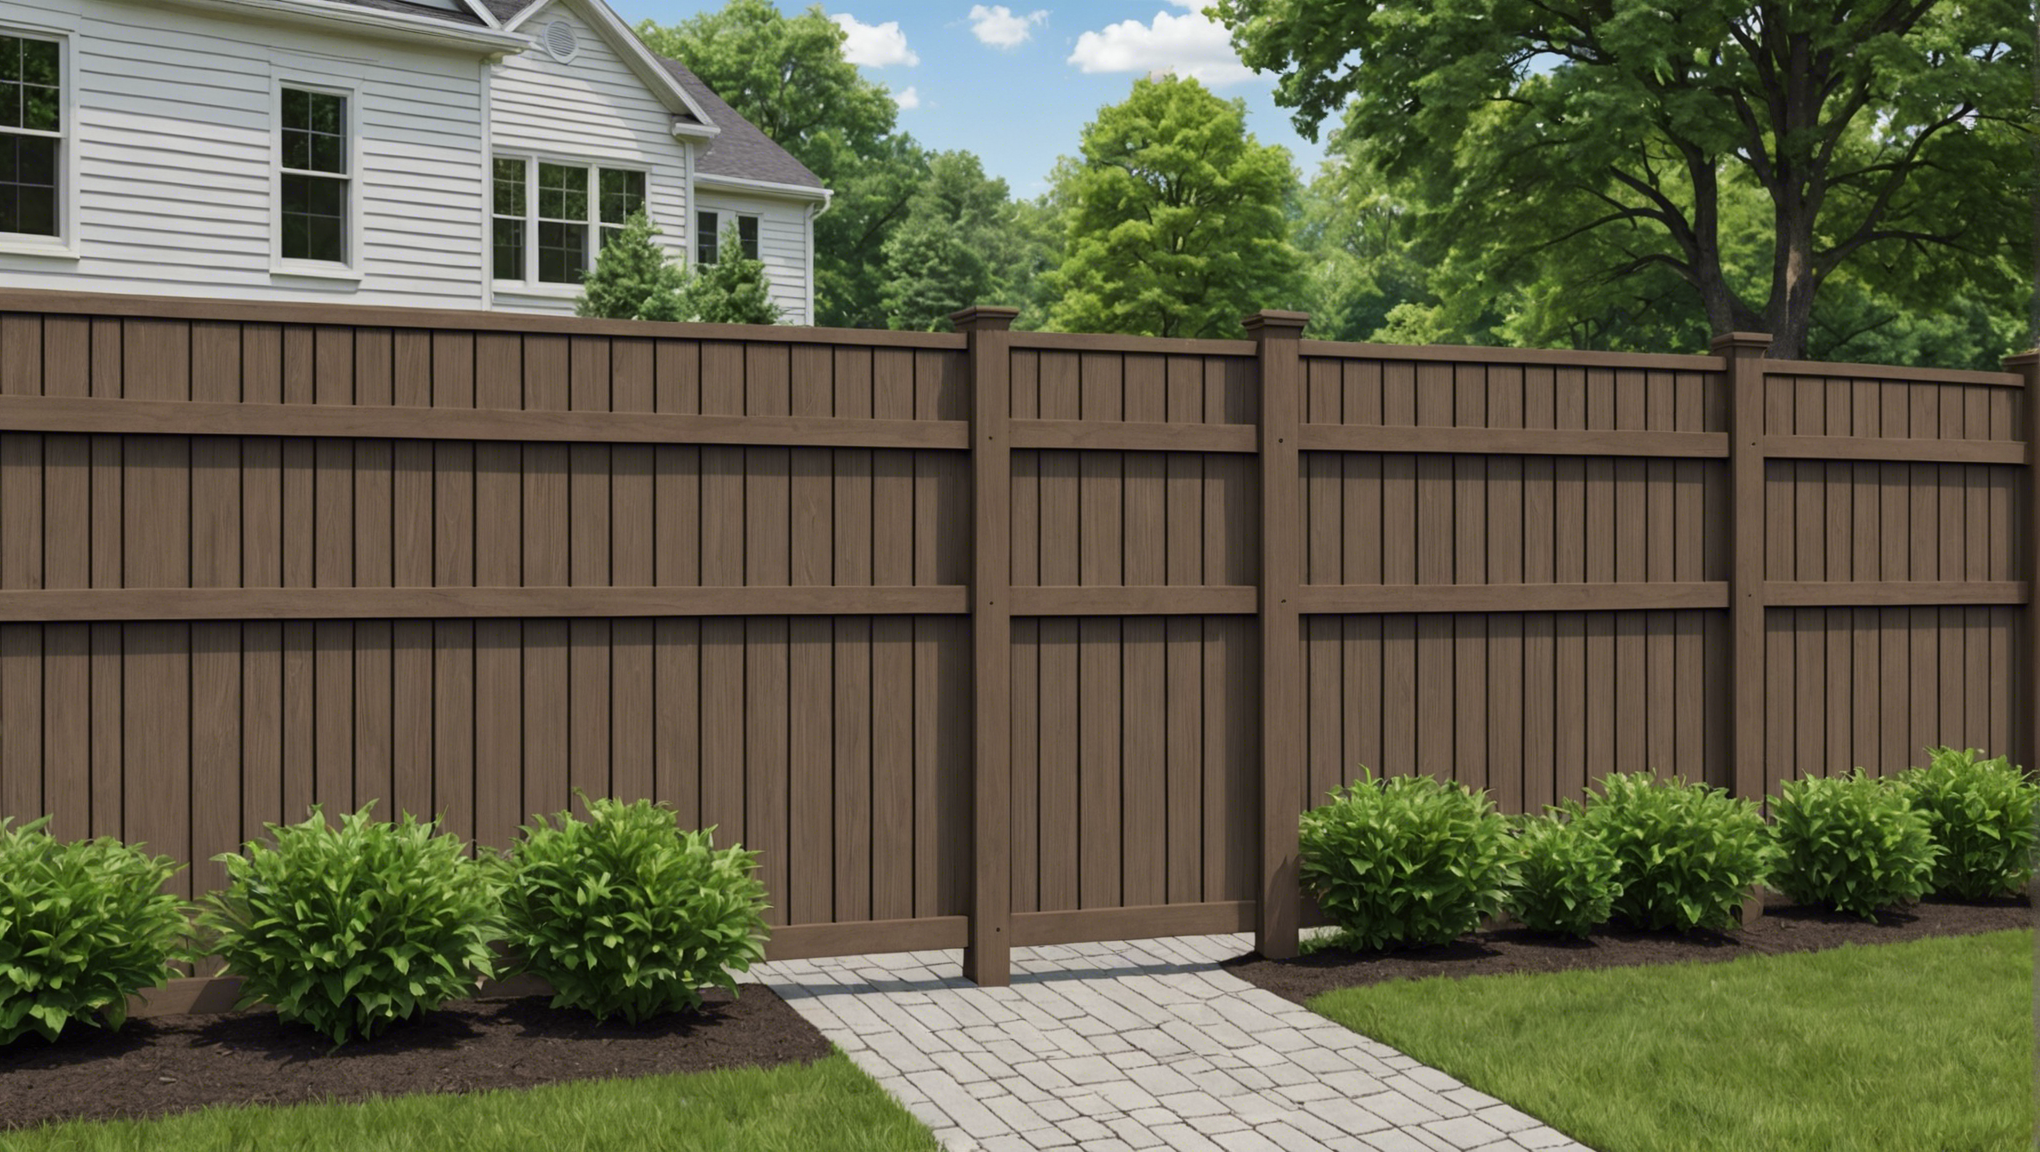 découvrez nos conseils pour bien choisir votre clôture extérieure afin de sécuriser et embellir votre espace extérieur selon vos besoins et préférences.